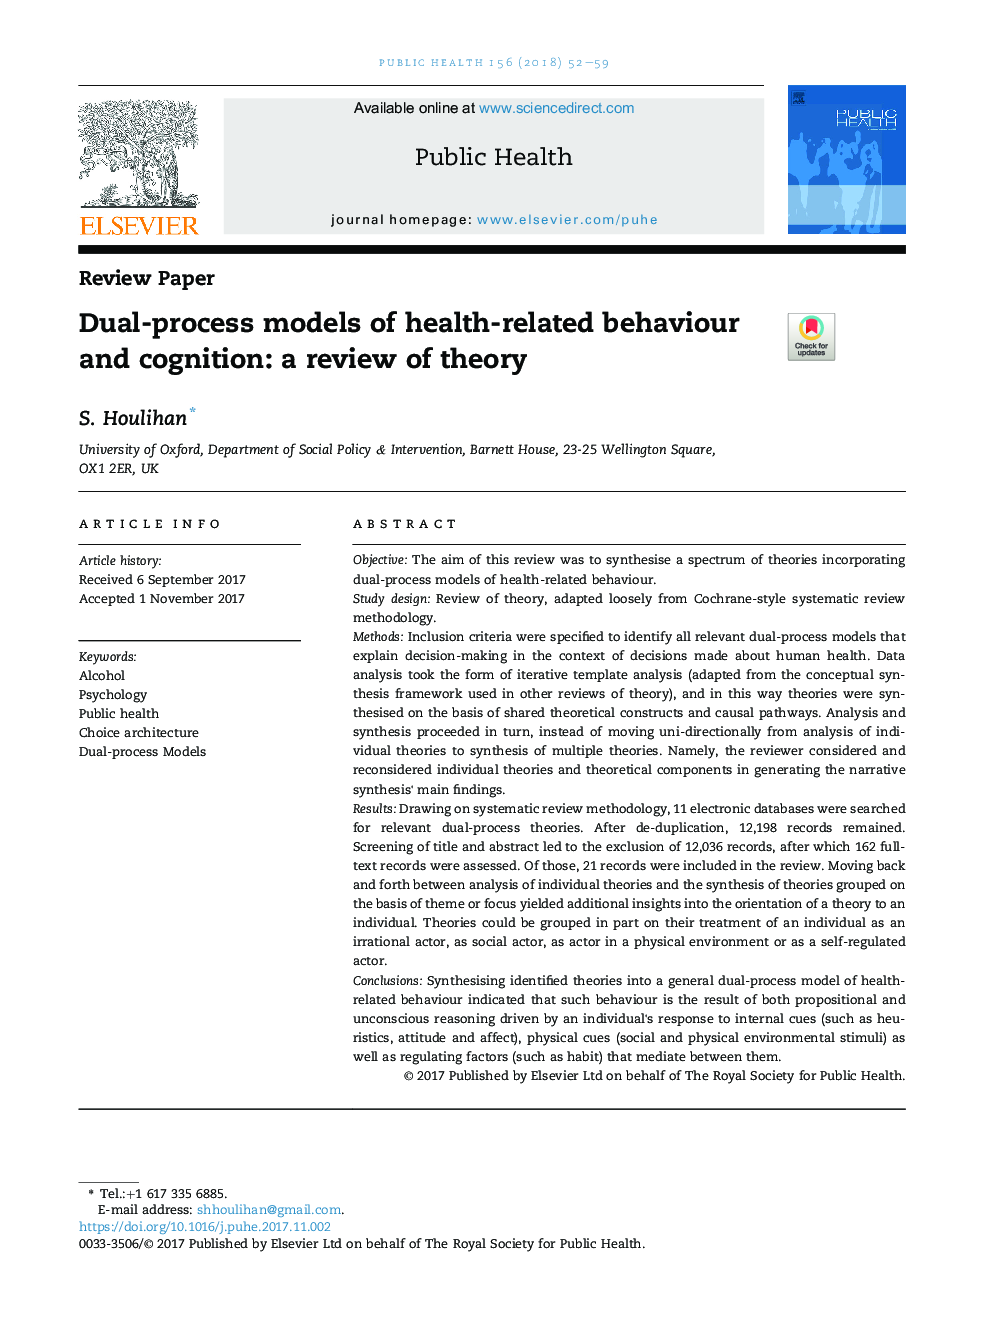 مدل های دو مرحلهای رفتار و رفتار شناختی مرتبط با سلامت: بررسی تئوری 